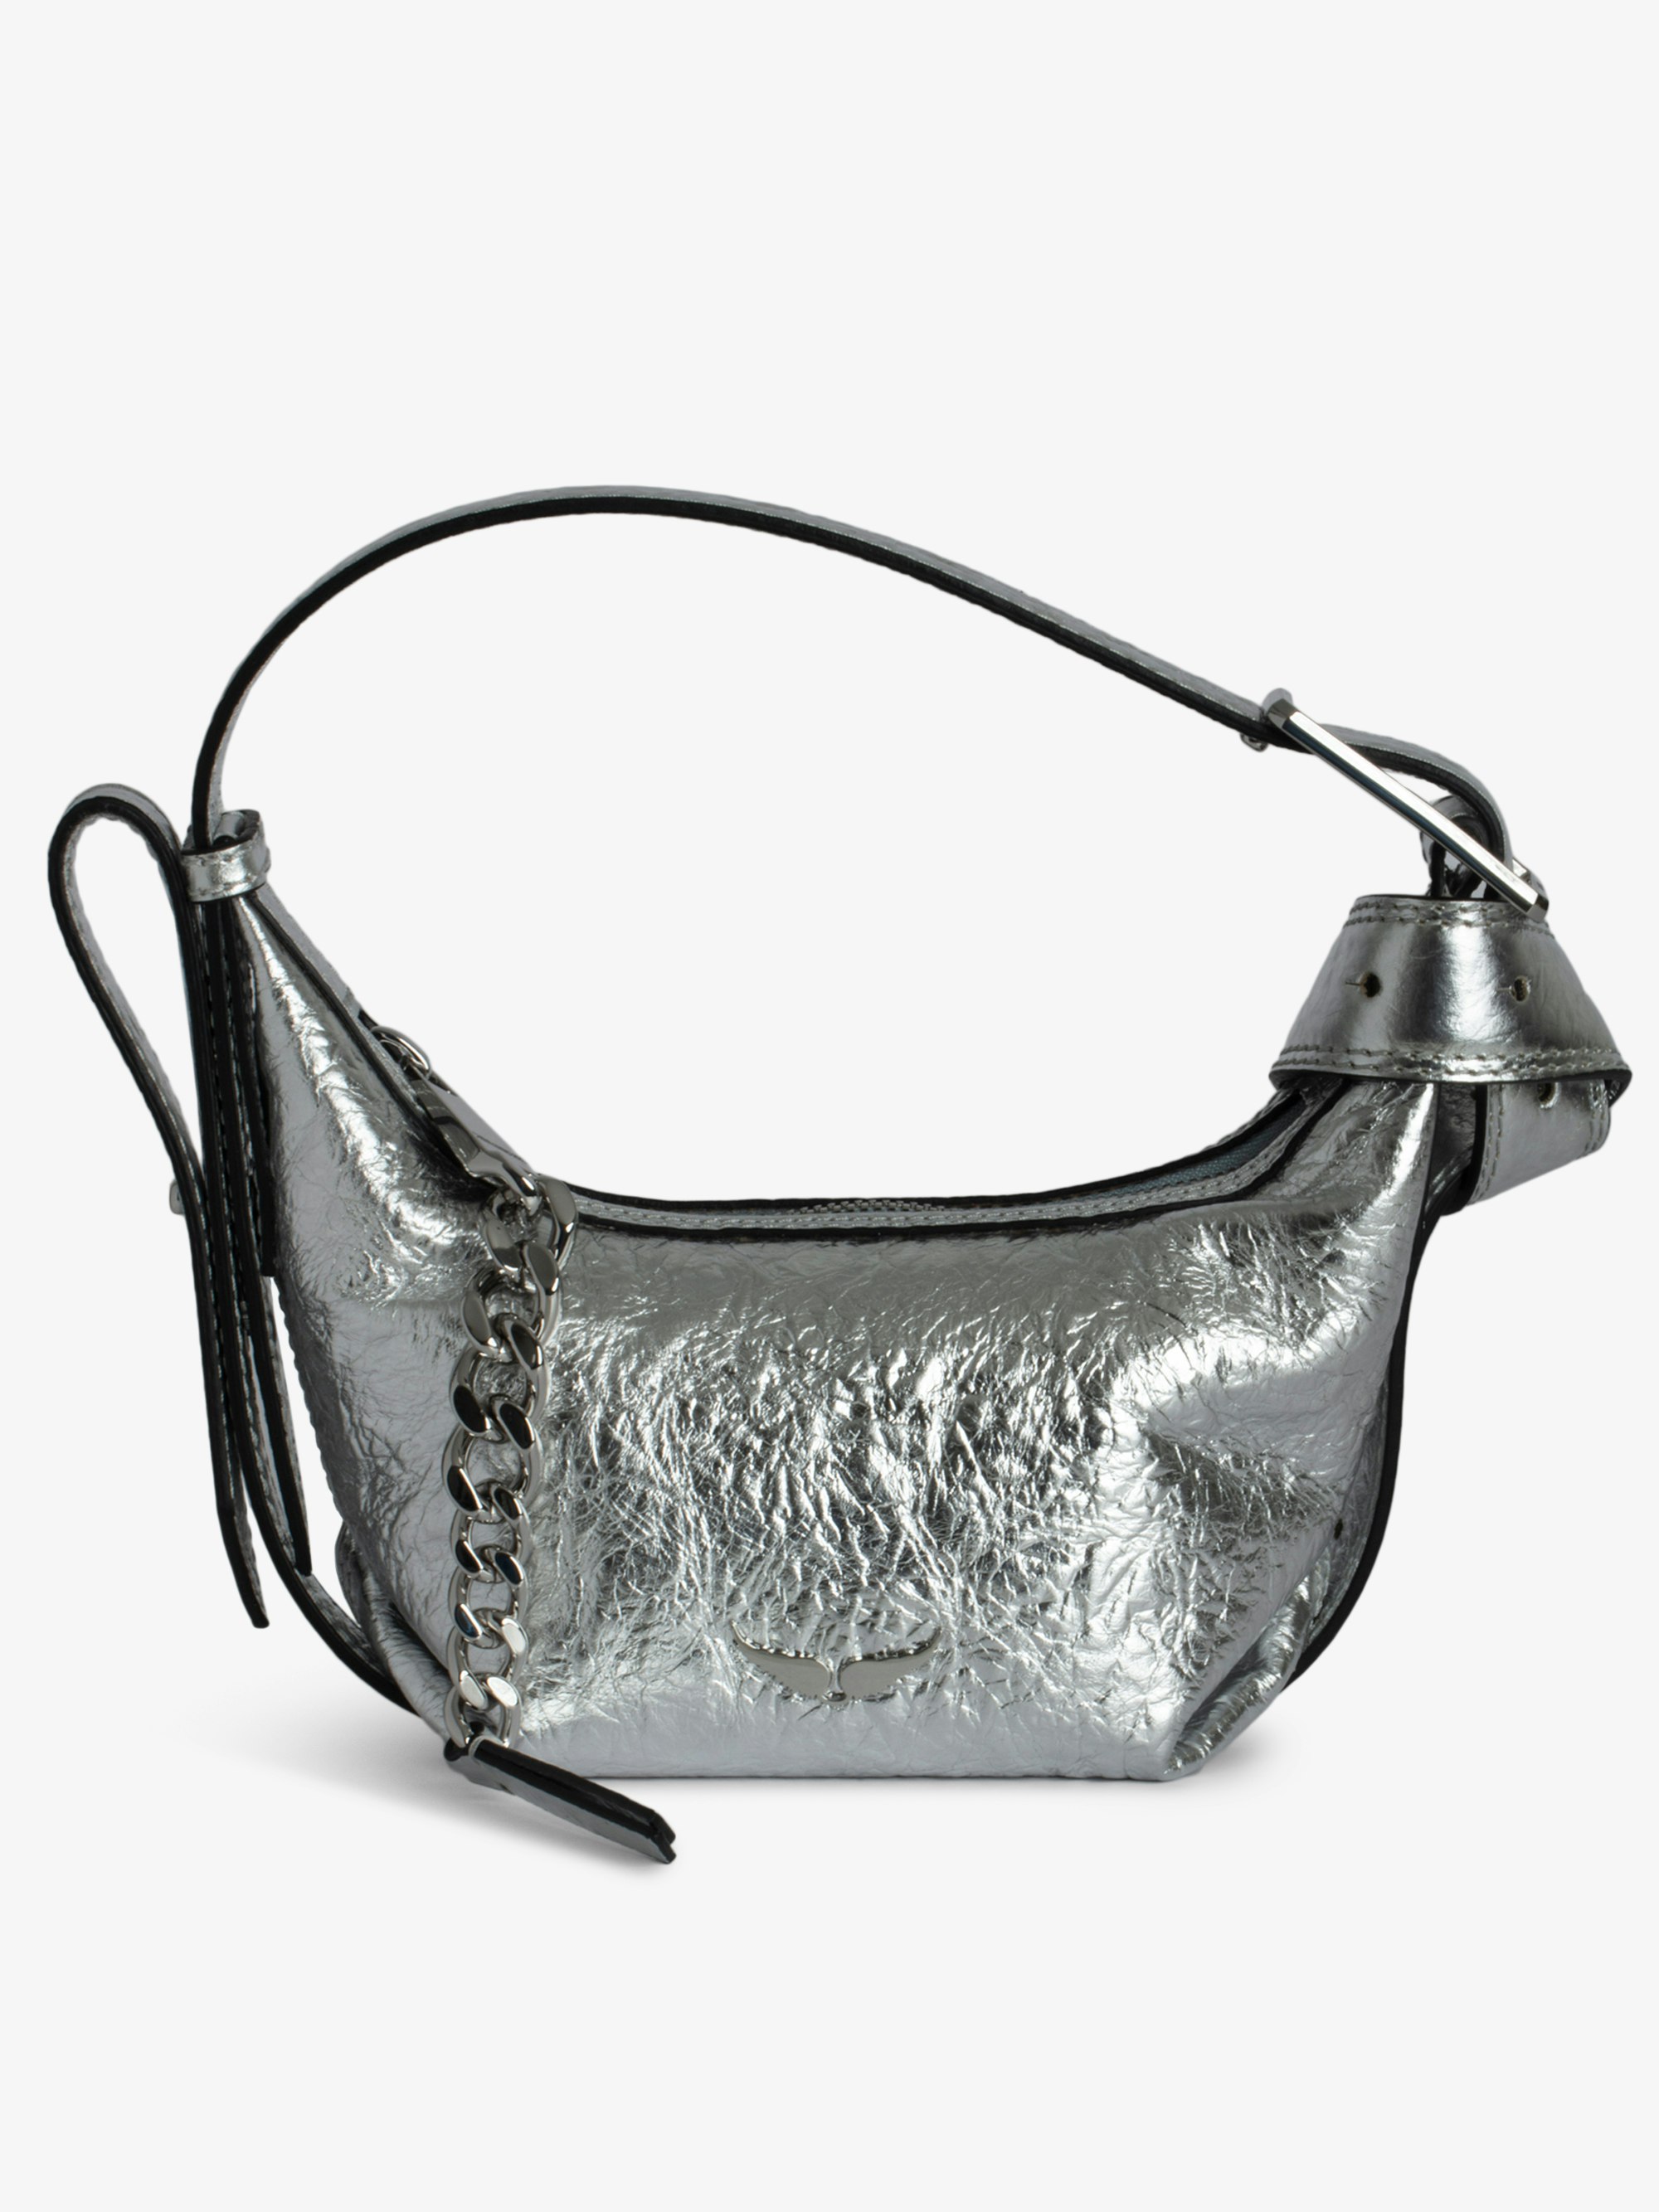 Borsa Le Cecilia XS - Piccola borsa in pelle metallizzata effetto stropicciato argentato con tracolla e fibbia in metallo a C.